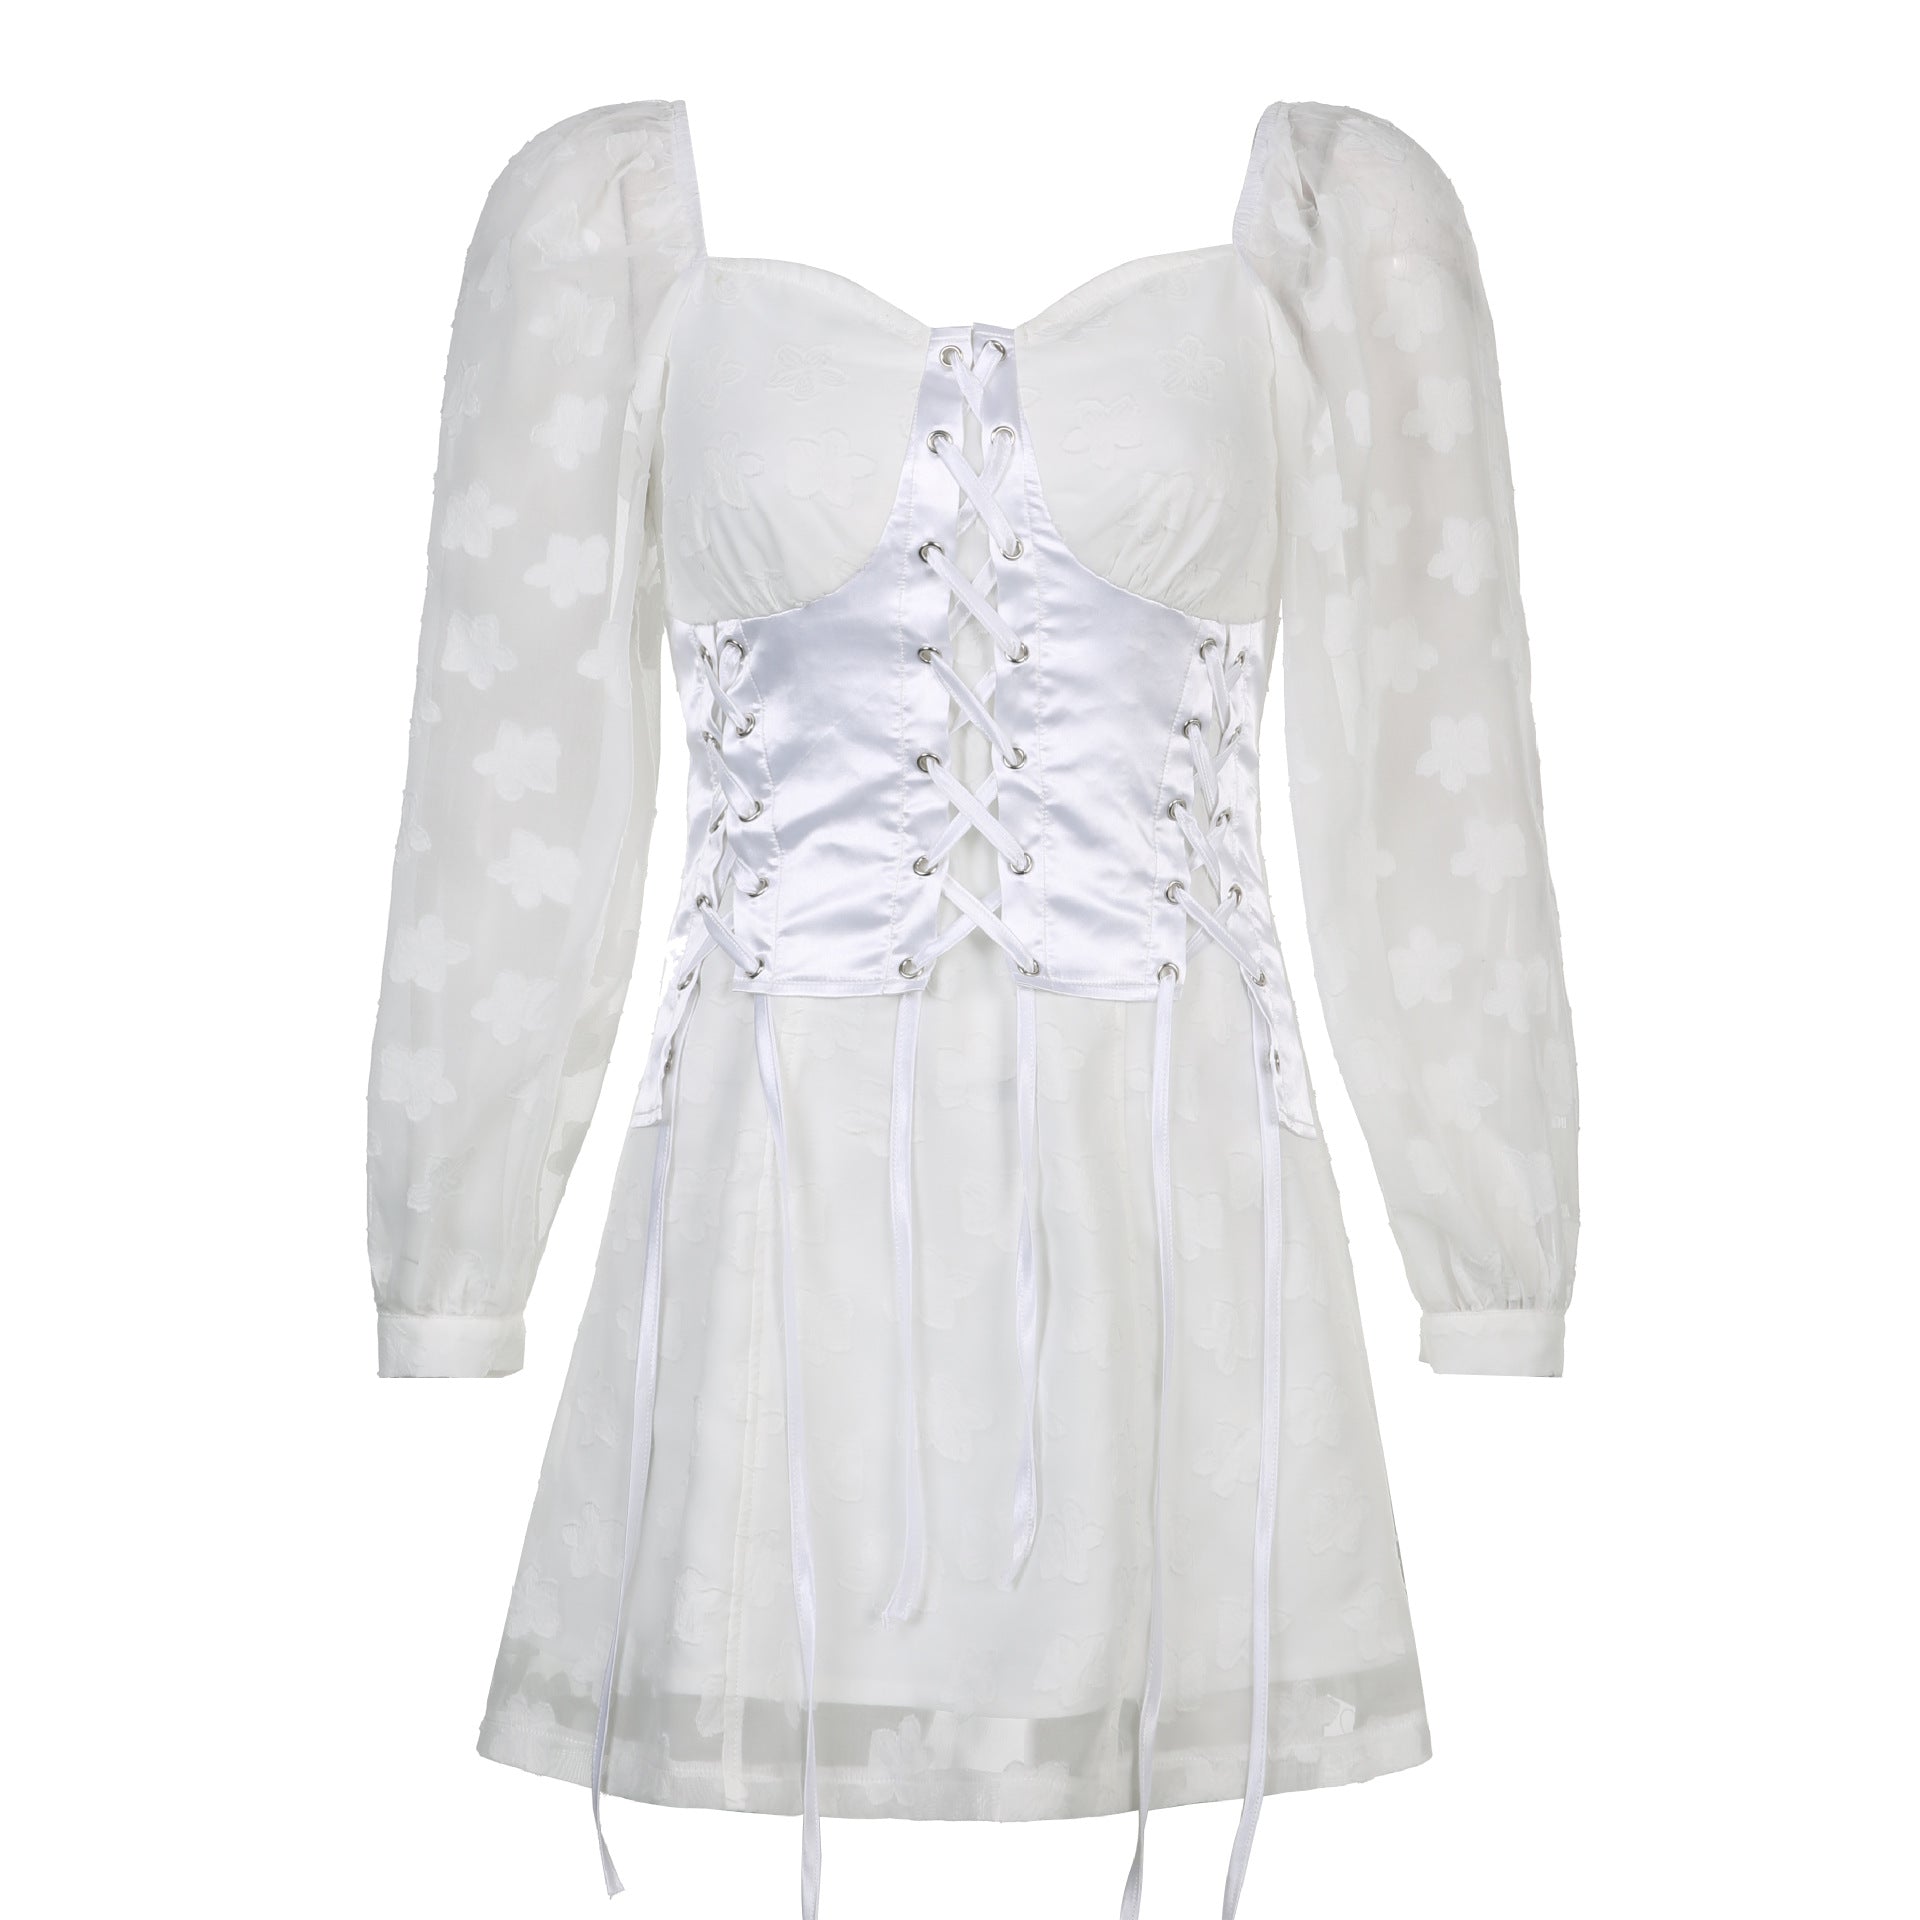 Women's White Palace Evening Lace Dress - D'Zani Fashion